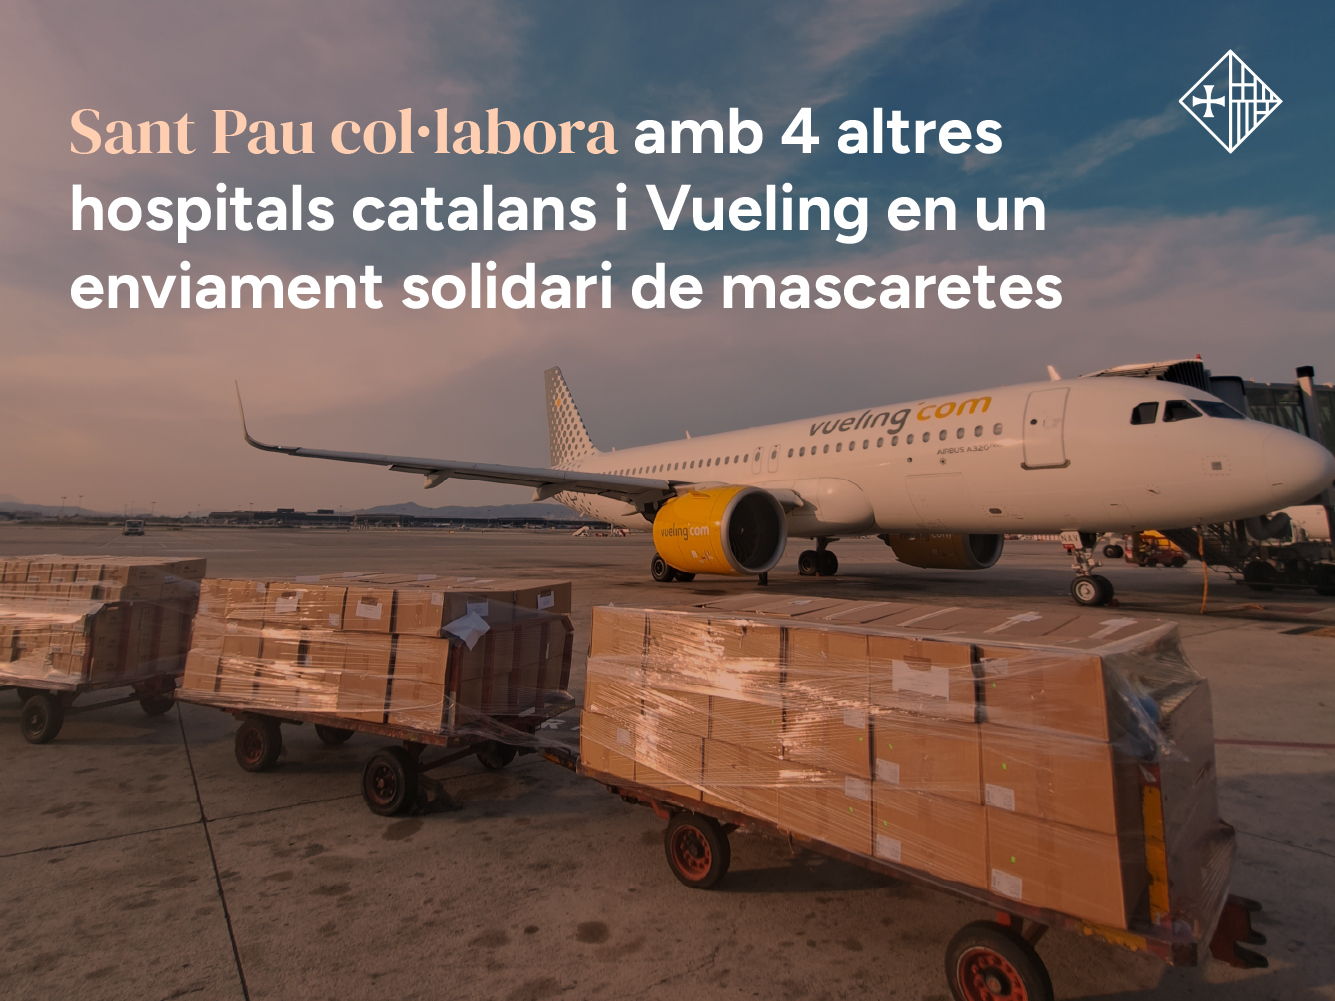 Sant Pau col·labora amb 4 altres hospitals catalans i Vueling en un enviament solidari de mascaretes, pantalles facials i ulleres protectores a Tenerife